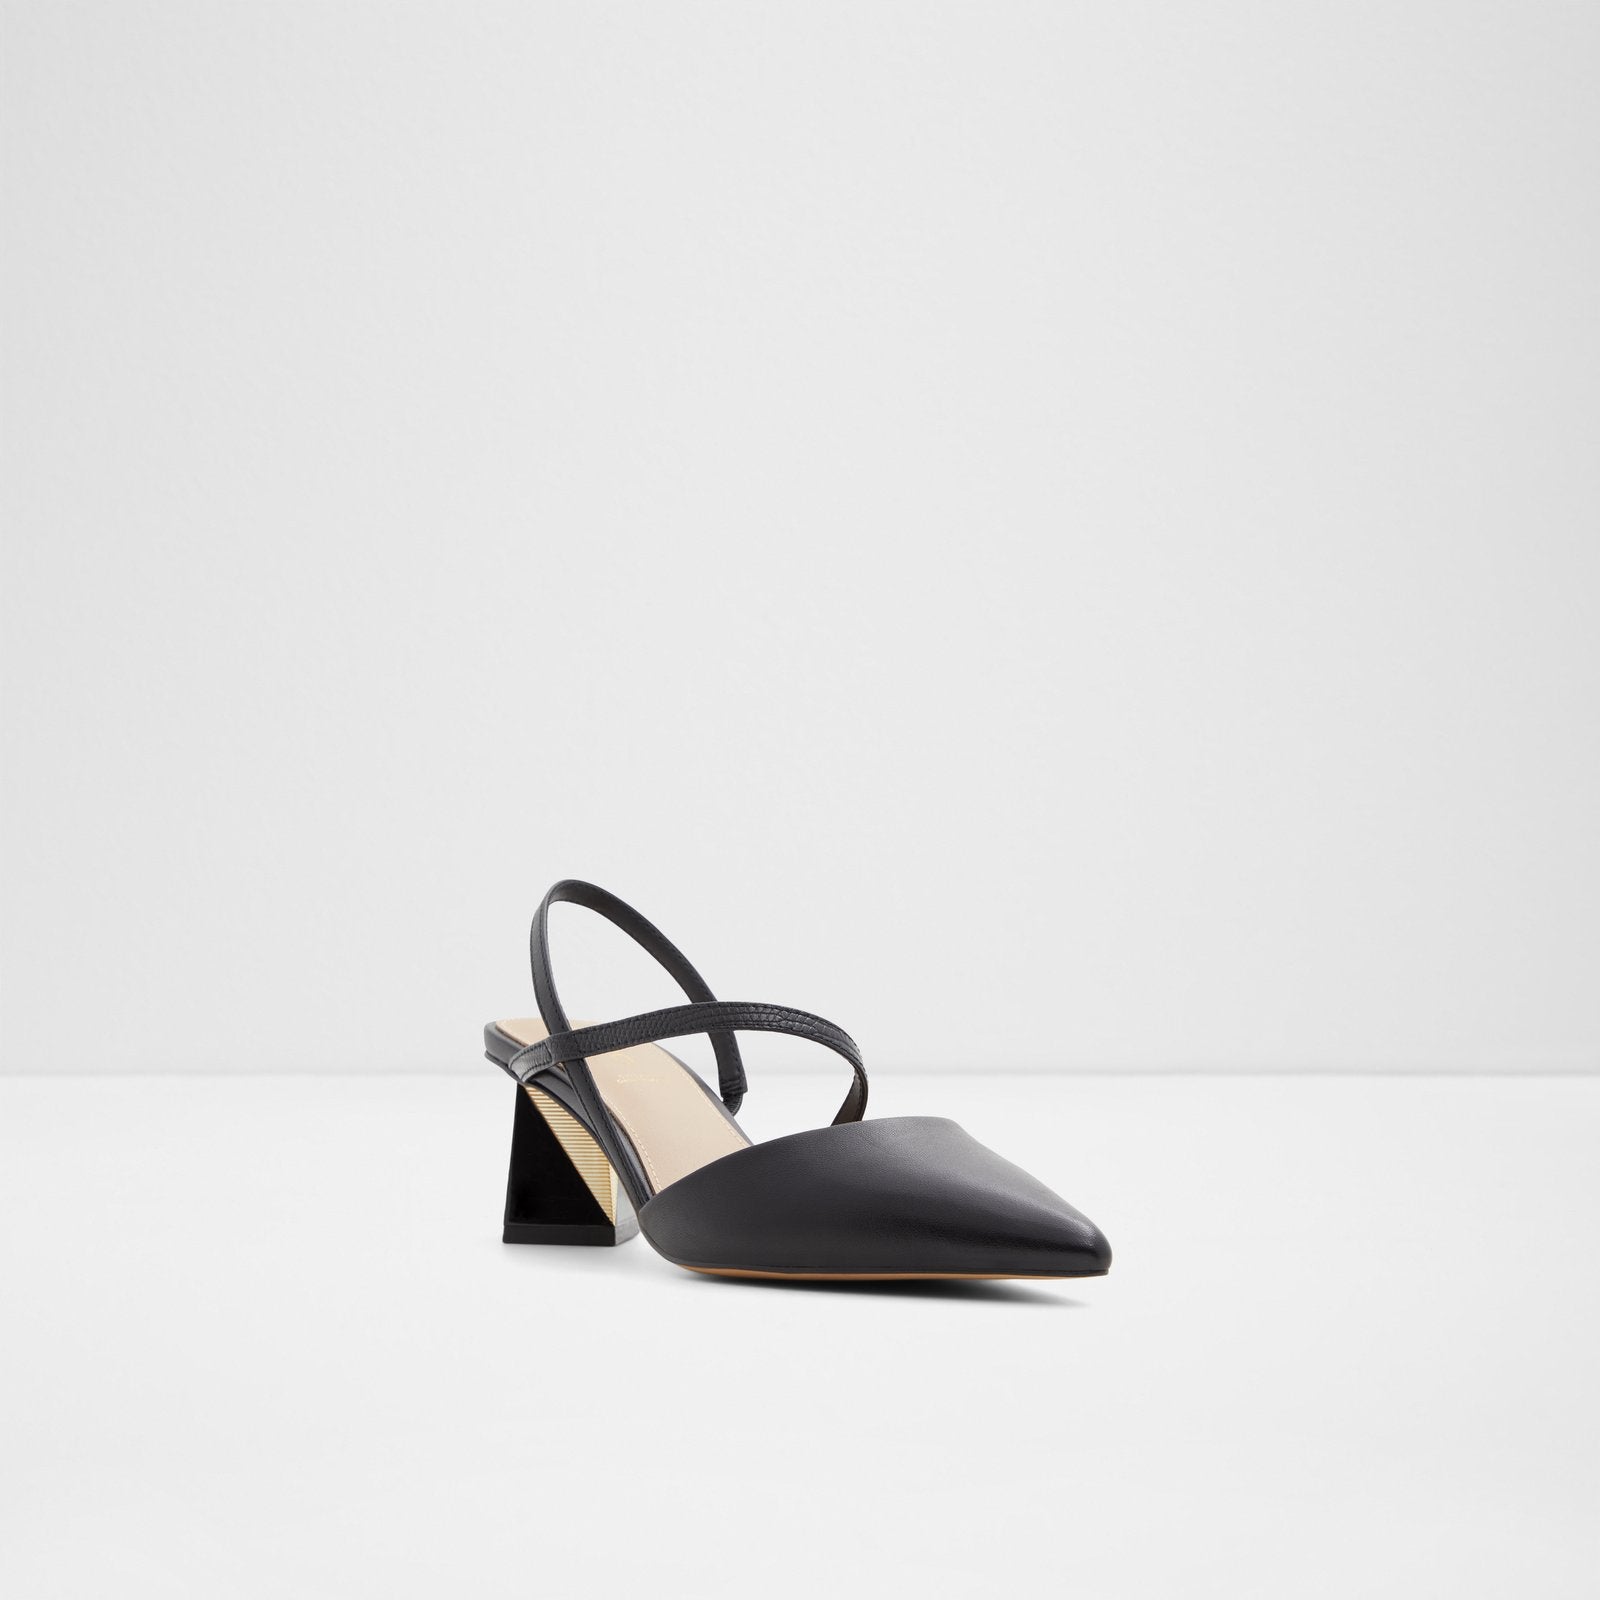 Suzette Women Shoes - Black - ALDO KSA